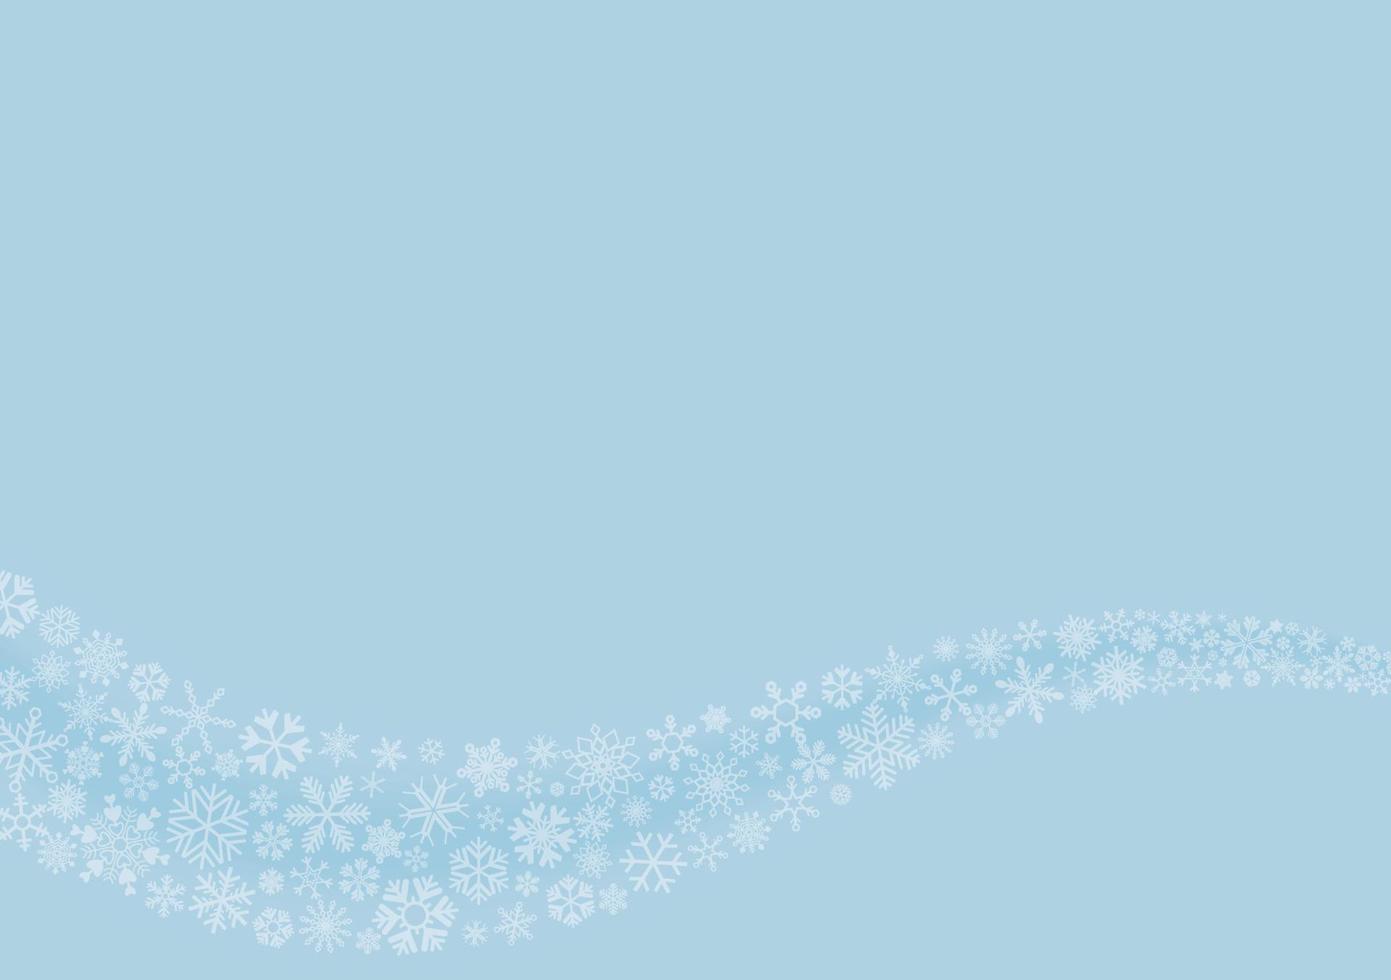 Welle von nahtlosen Schneeflocken haben Leerzeichen auf hellblauem Hintergrund. winterferienthema, weihnachts- und neujahrsvorlage. vektor